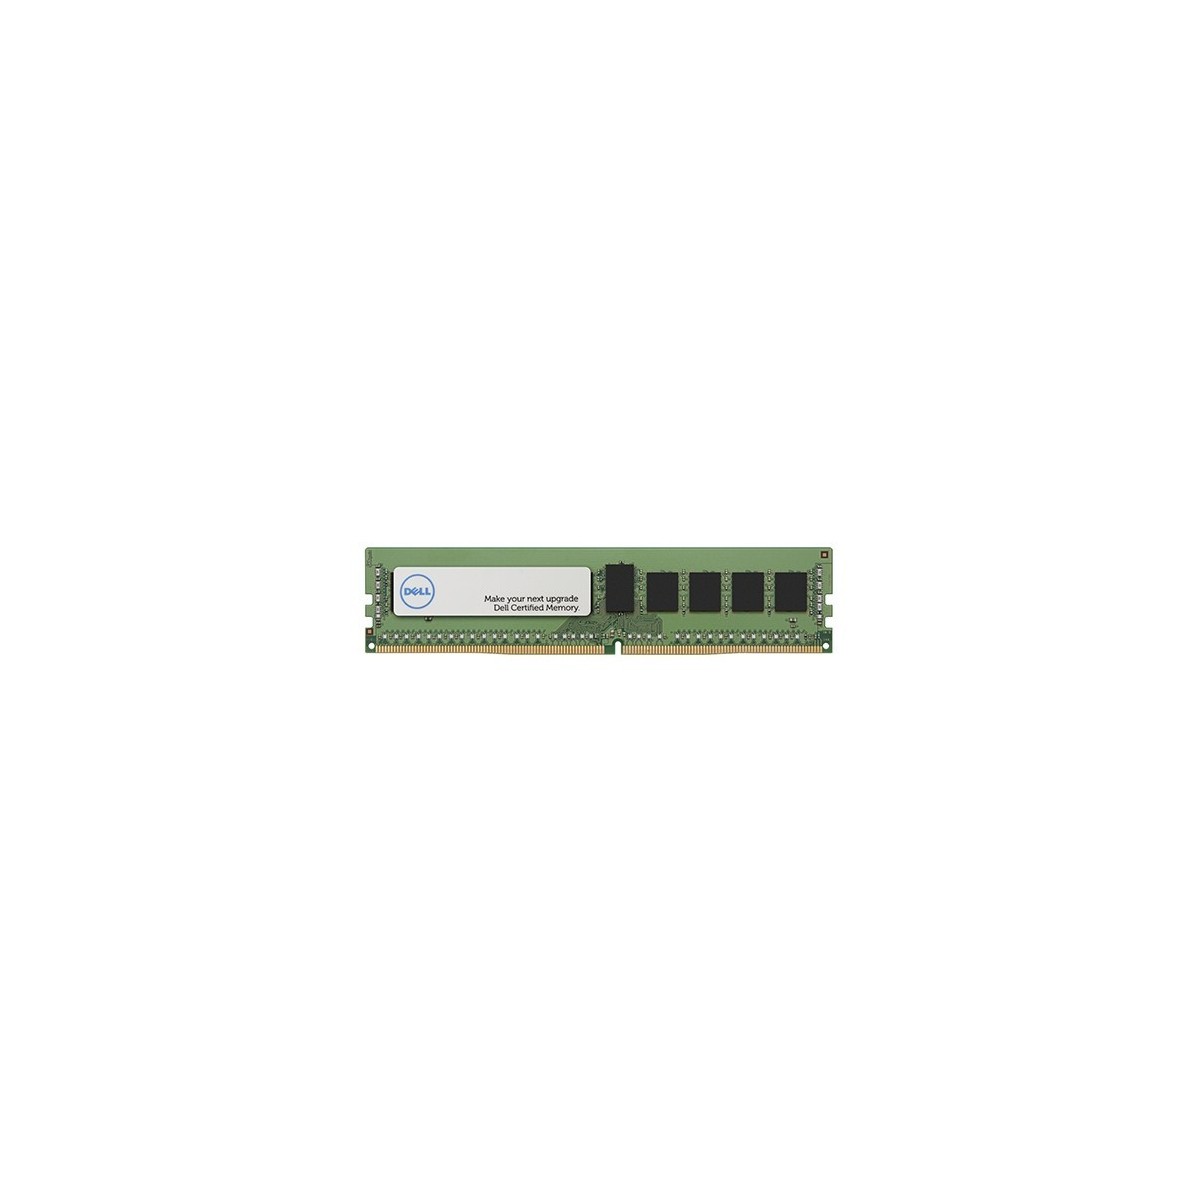 Dell A7945660 - 16 GB - 1 x 16 GB - DDR4 - 2133 MHz - 288-pin DIMM - Green